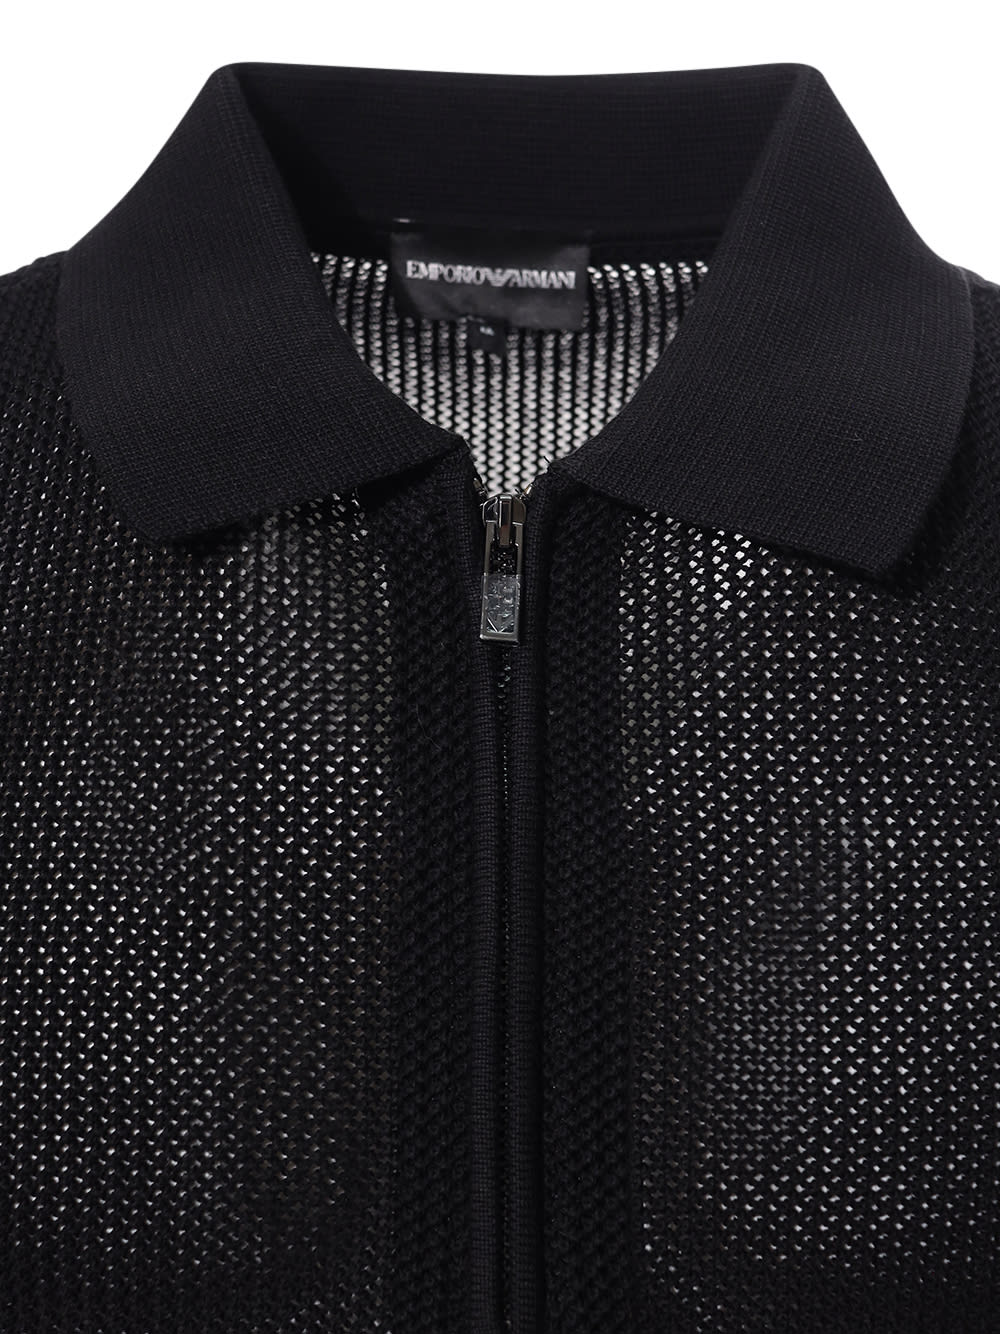 Shop Emporio Armani Polo Neck Sweater In Black